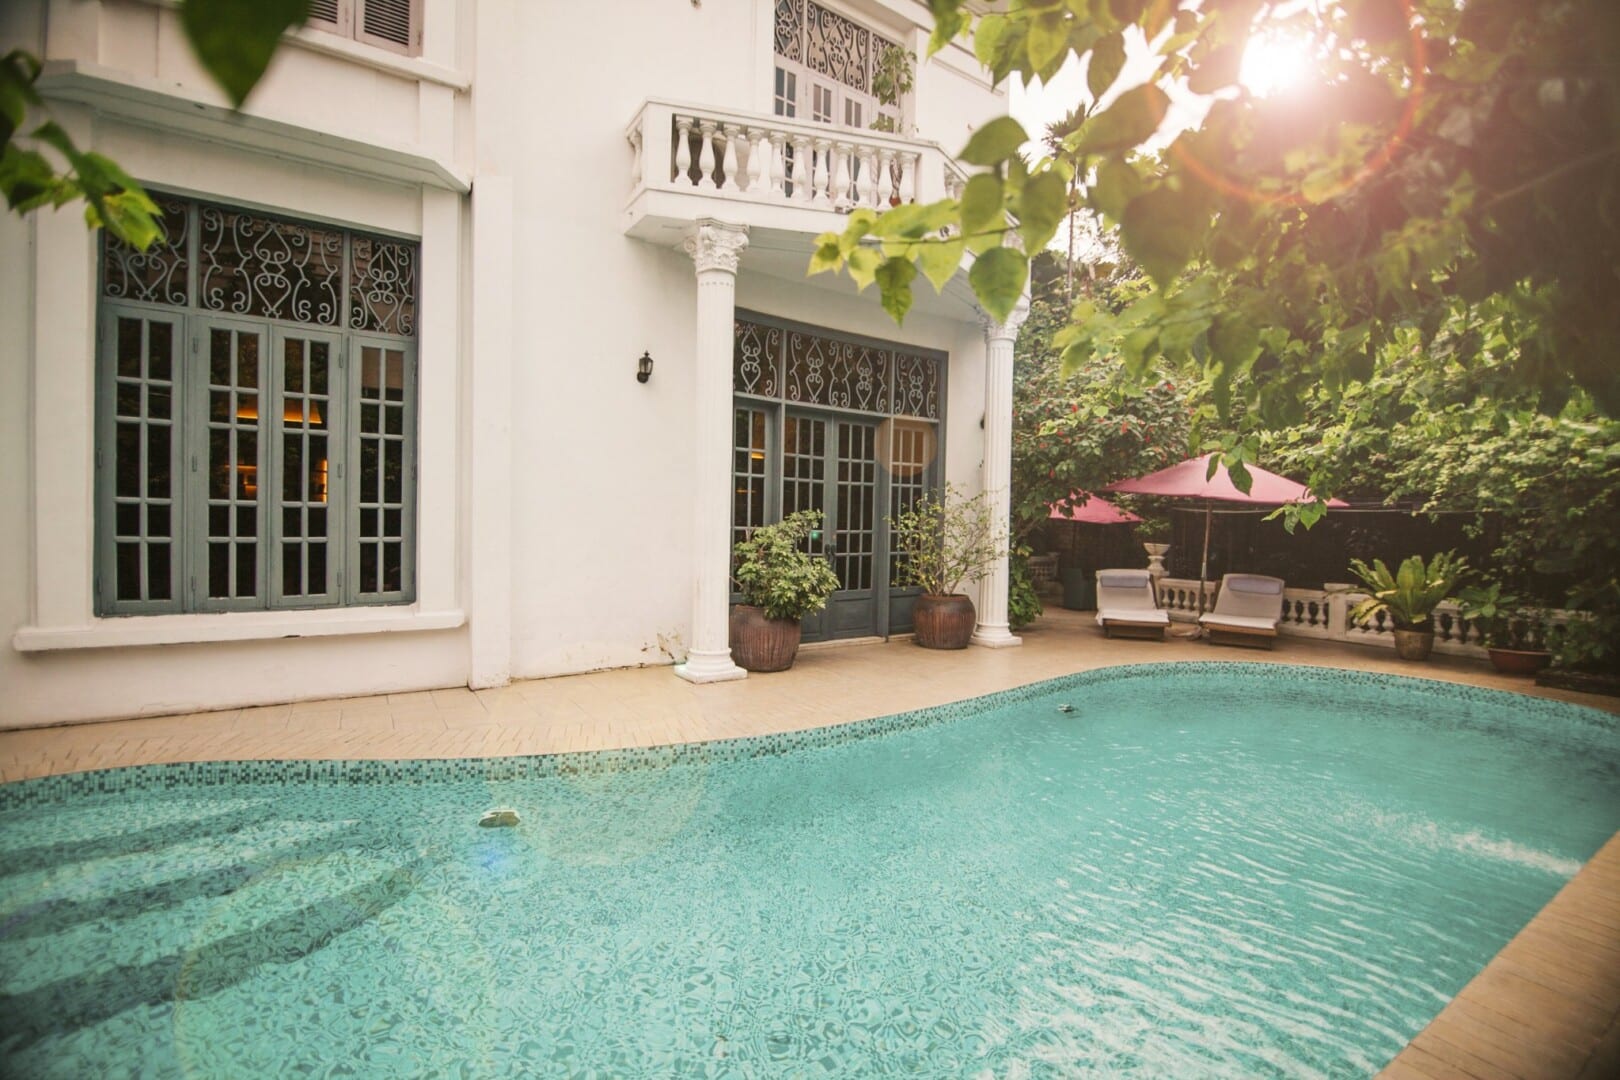 L'Apothiquaire - Best spa in Saigon